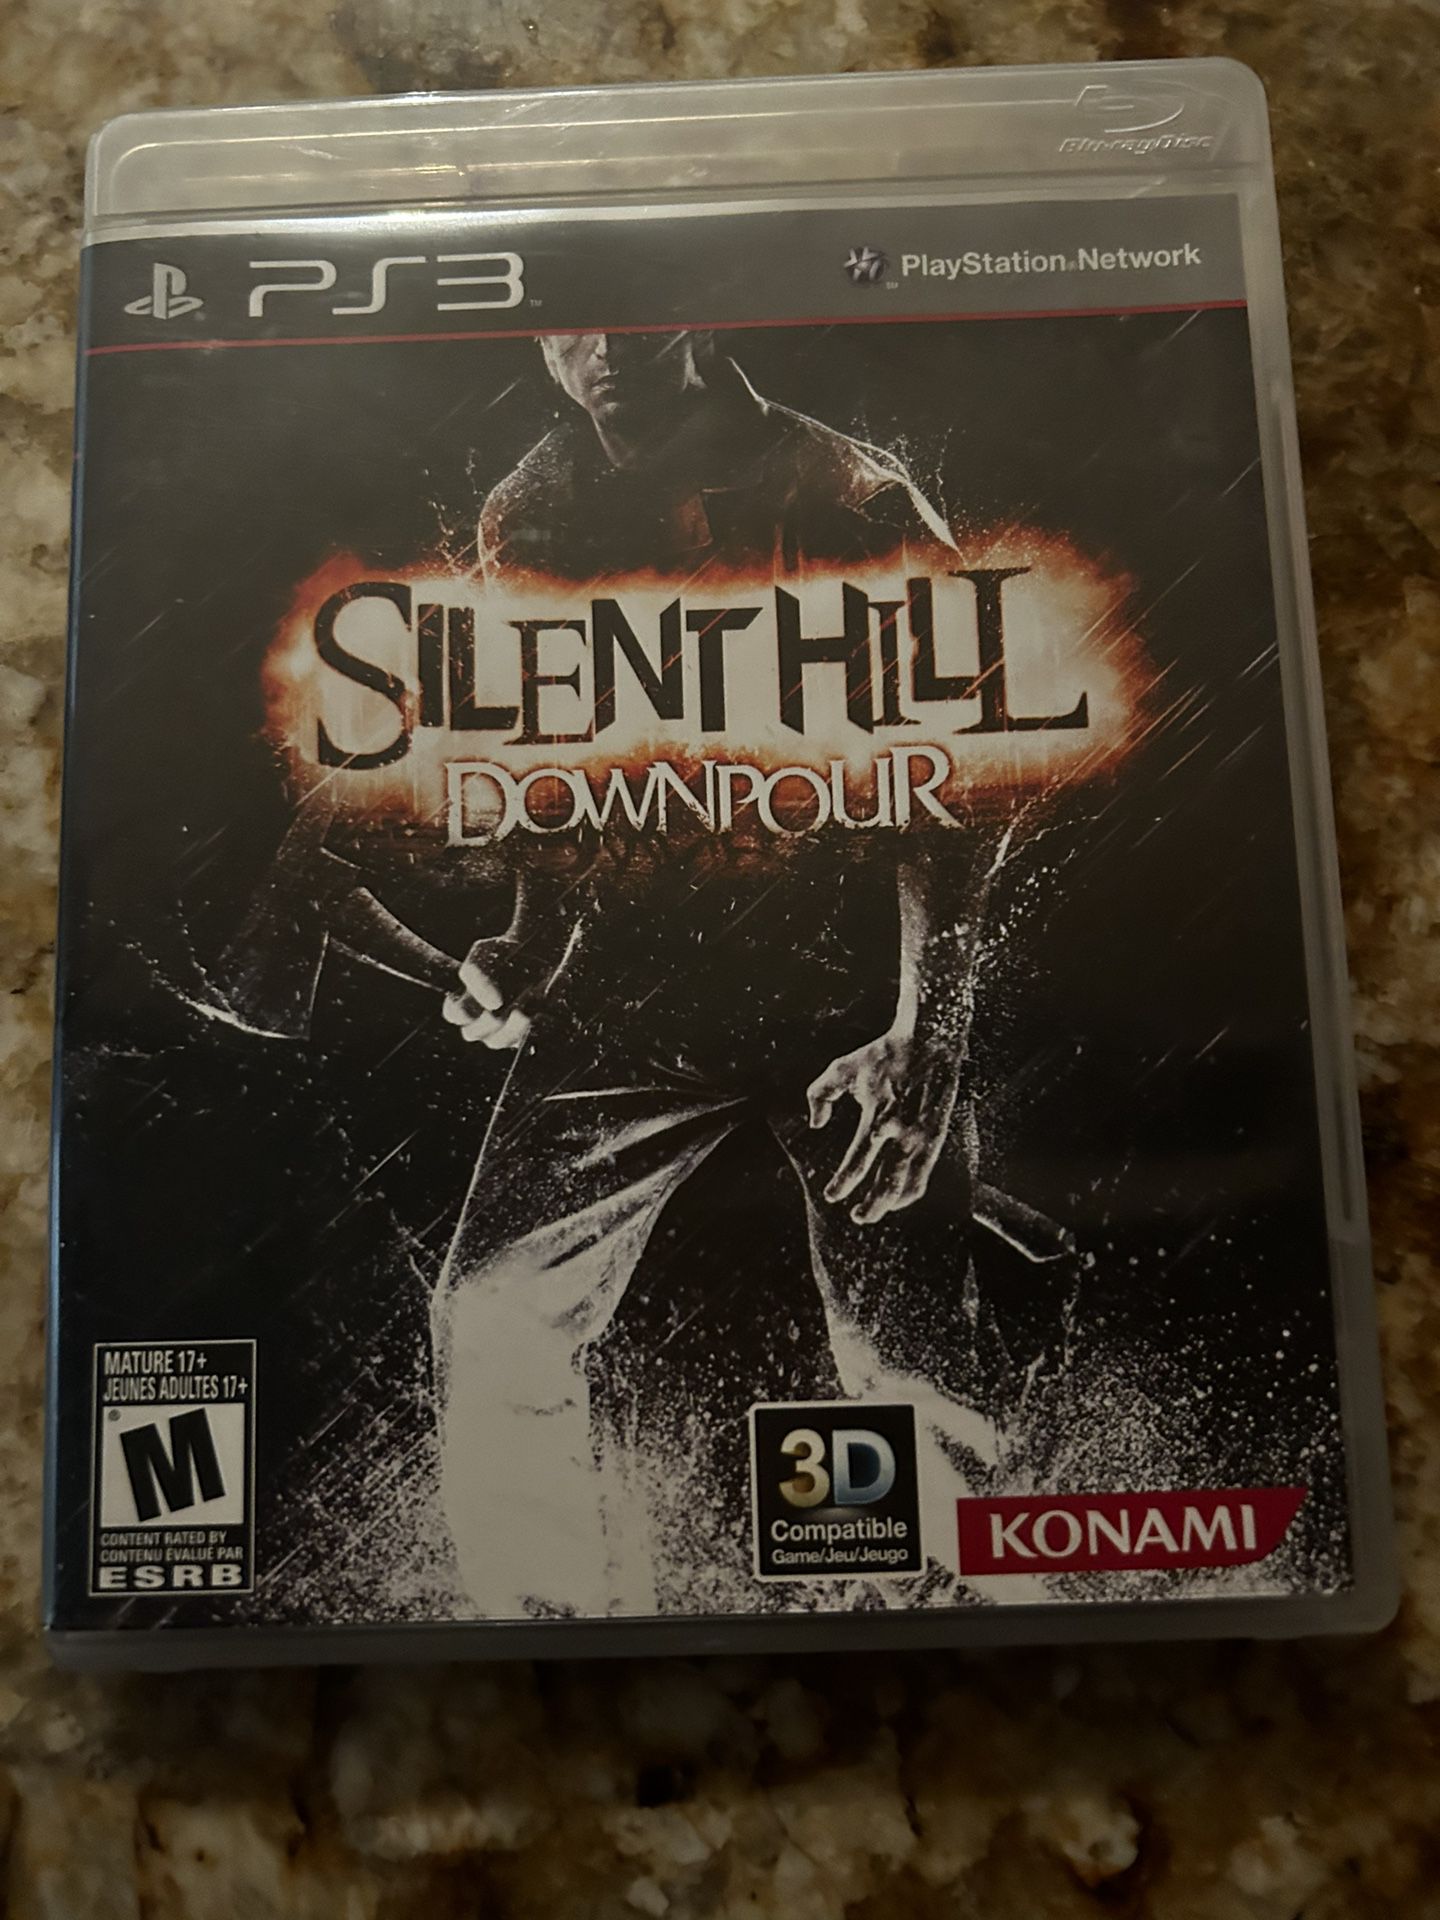 PS3 Silent Hill Downpour 